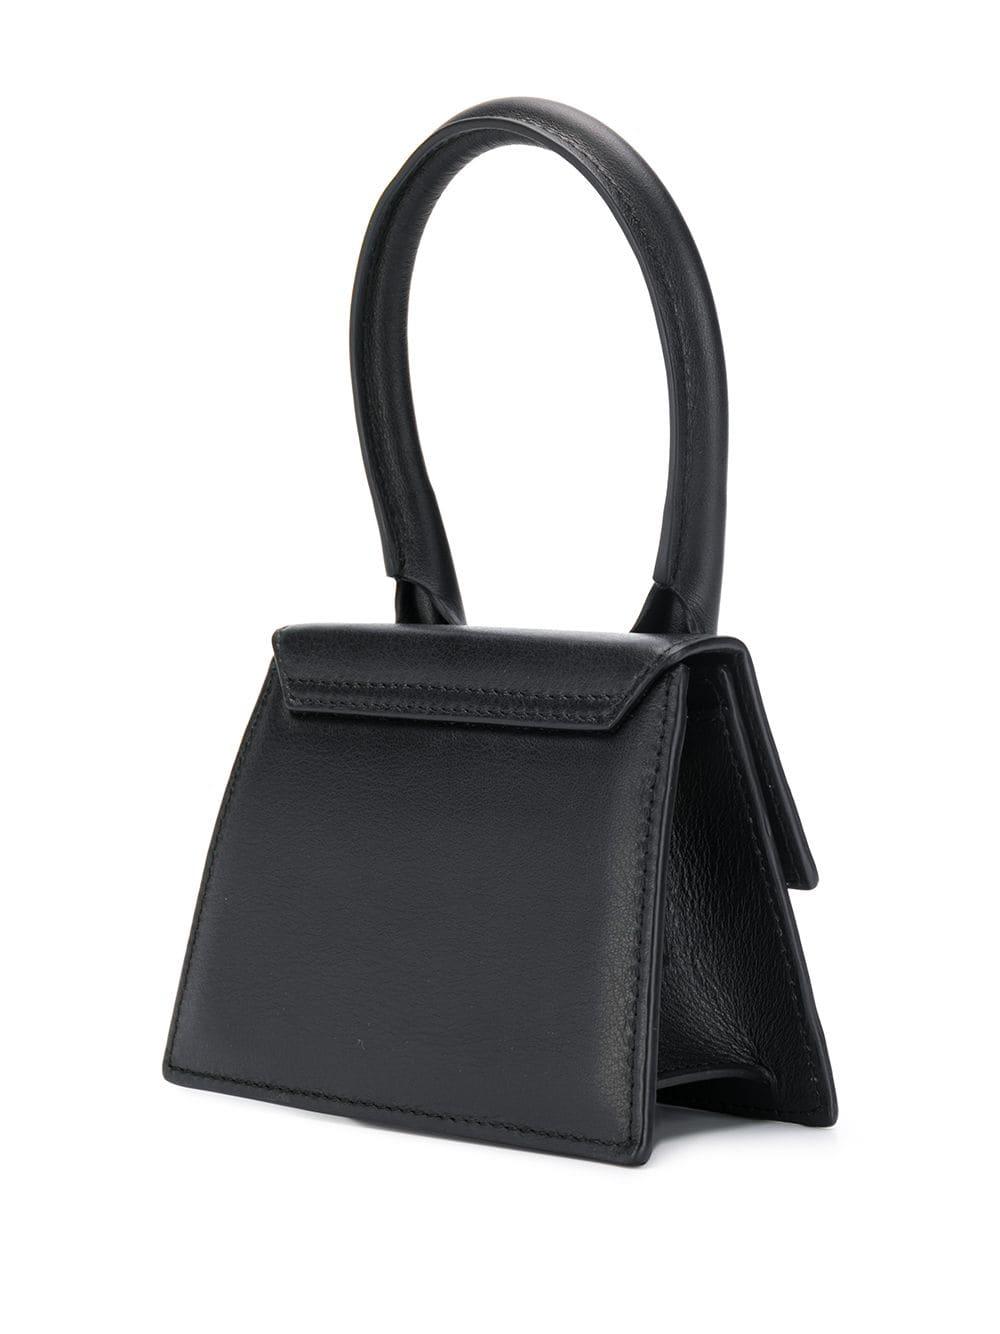 Jacquemus Logo Mini Bag in Black - Lyst